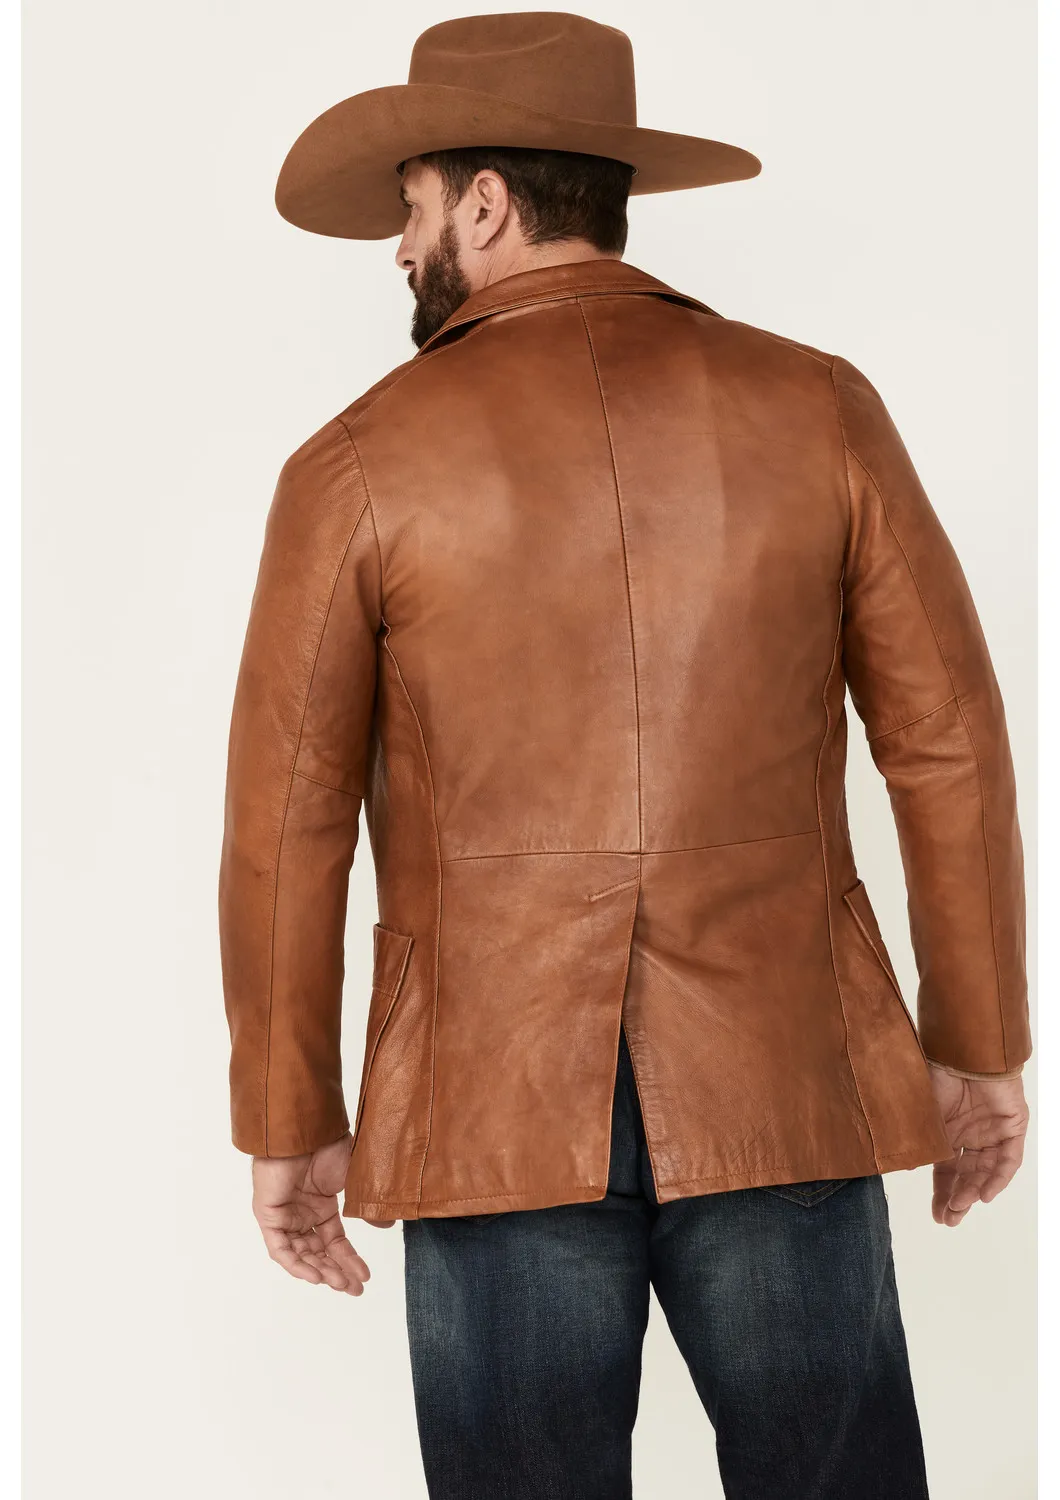 Lavendard Brown Western Leather Blazer